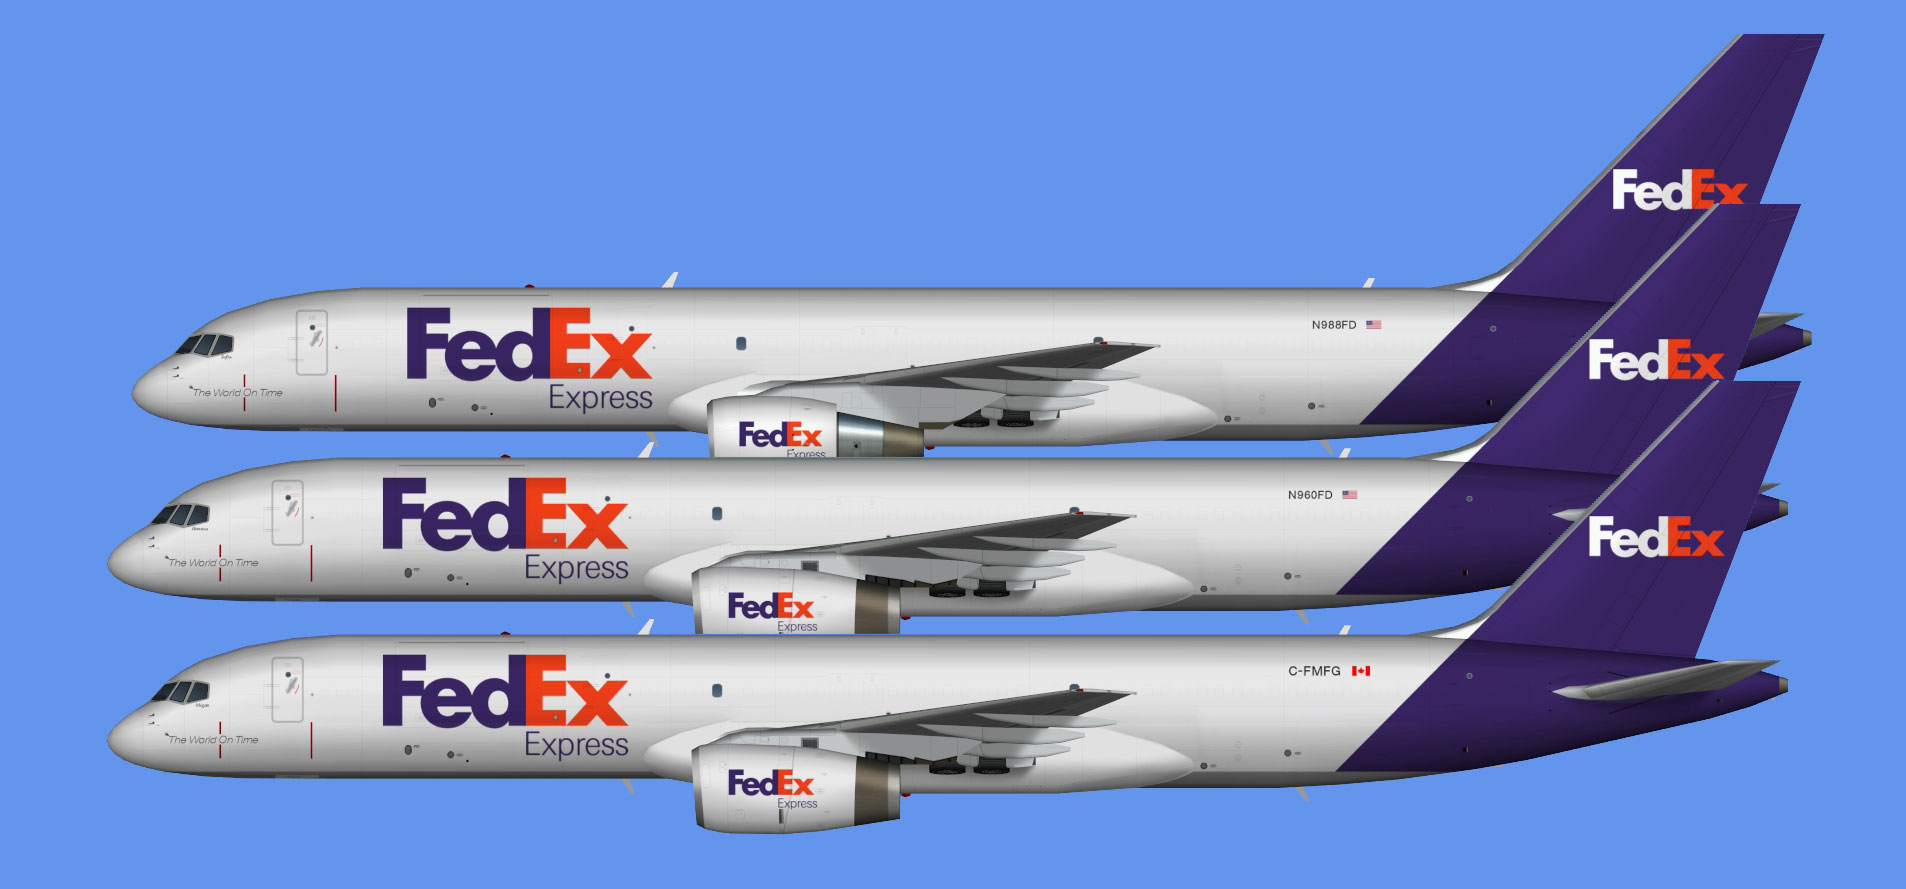 Fedex Express Boeing 757